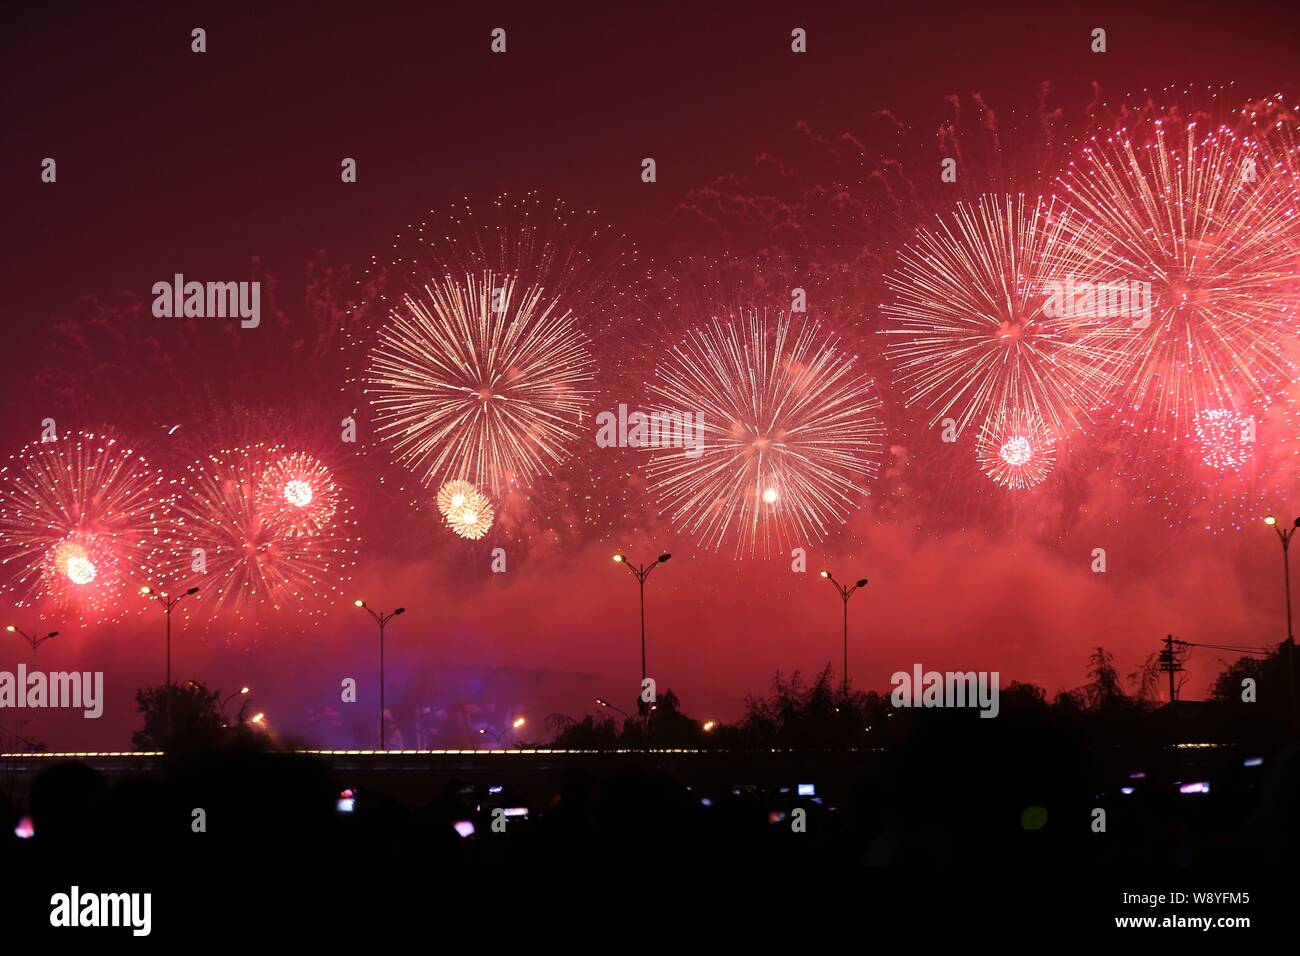 Au cours de l'explosion d'artifice vert olympique pour l'APEC 2014 à Beijing, Chine, 10 novembre 2014. Banque D'Images